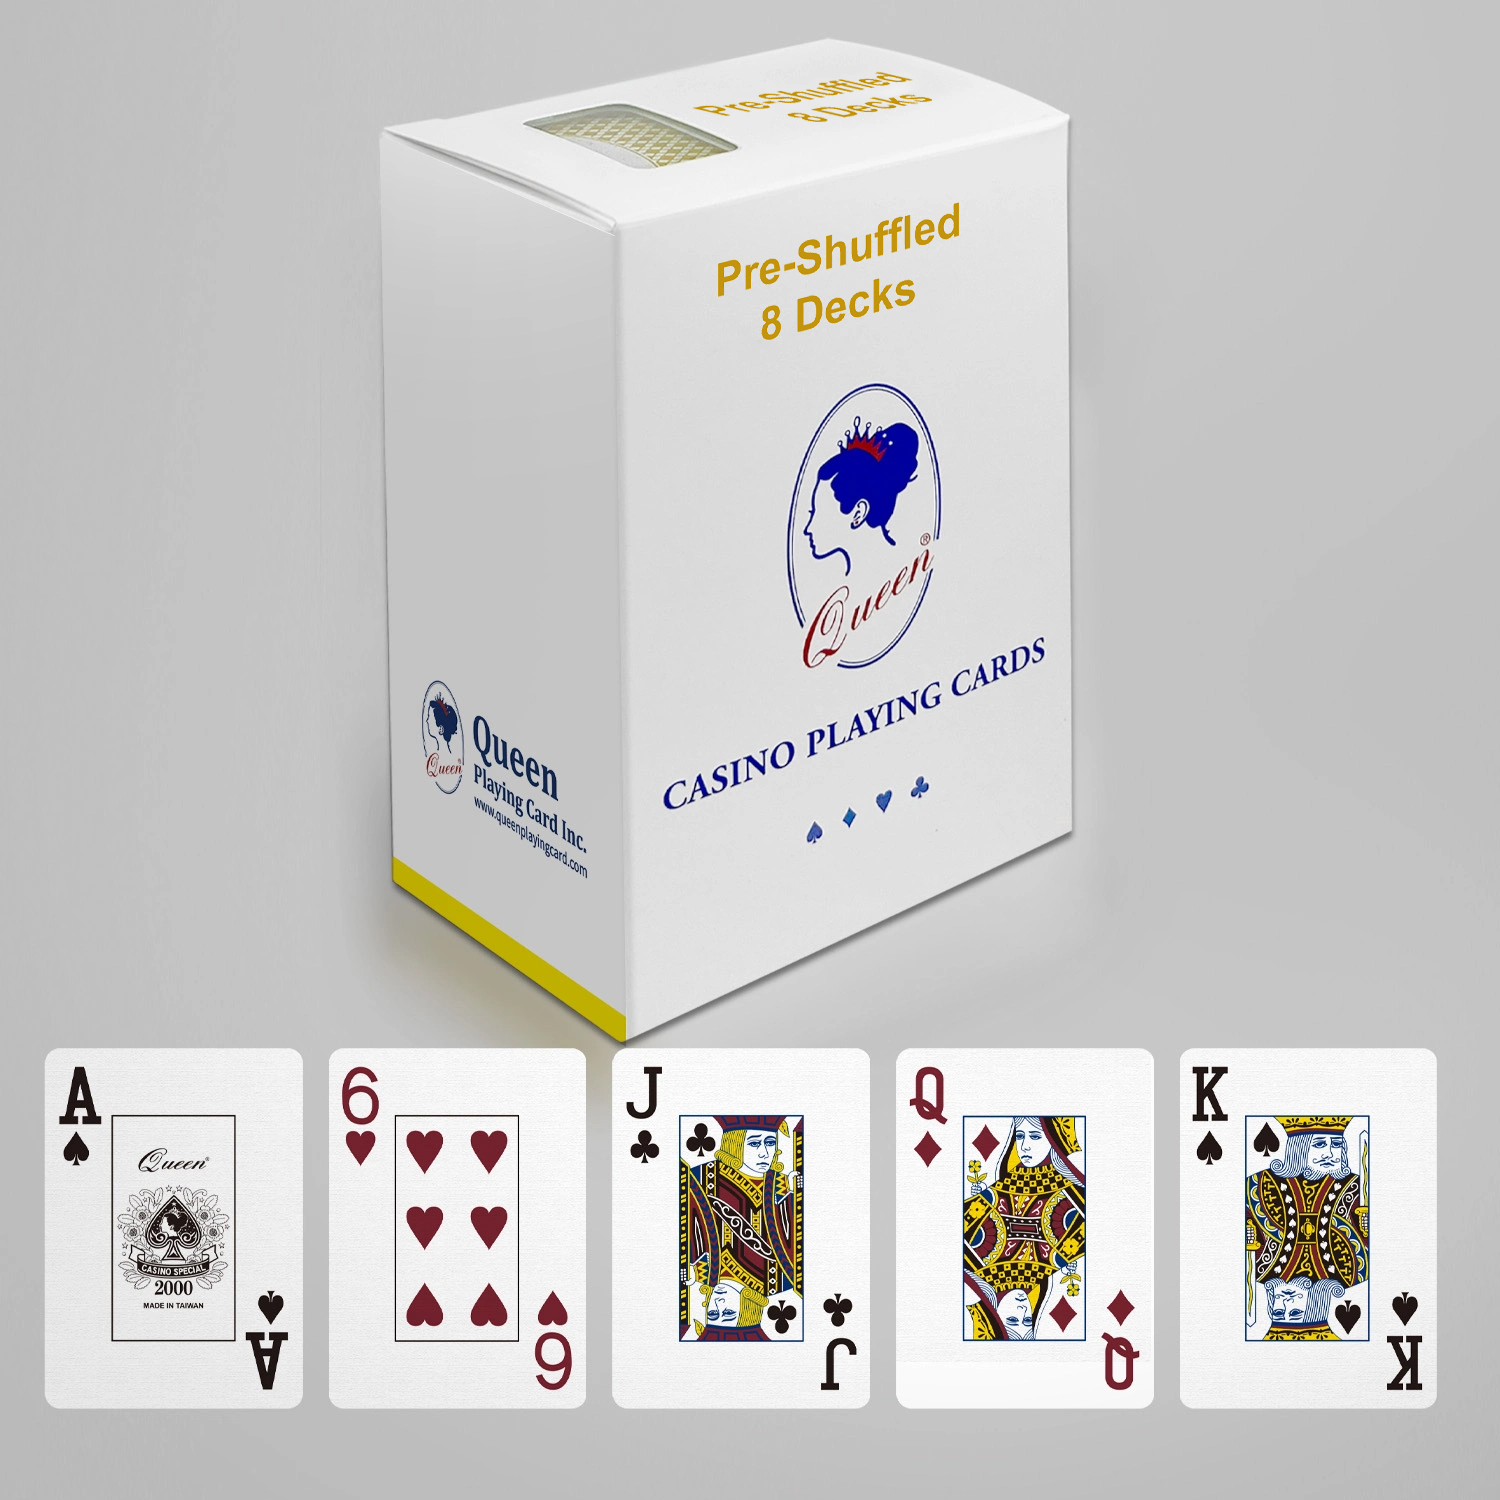 Propesyonal na Card Room Paper Paglalaro ng mga Card Laki ng Poker - Standard Index - 8 Deck Set Pre-shuffled Available